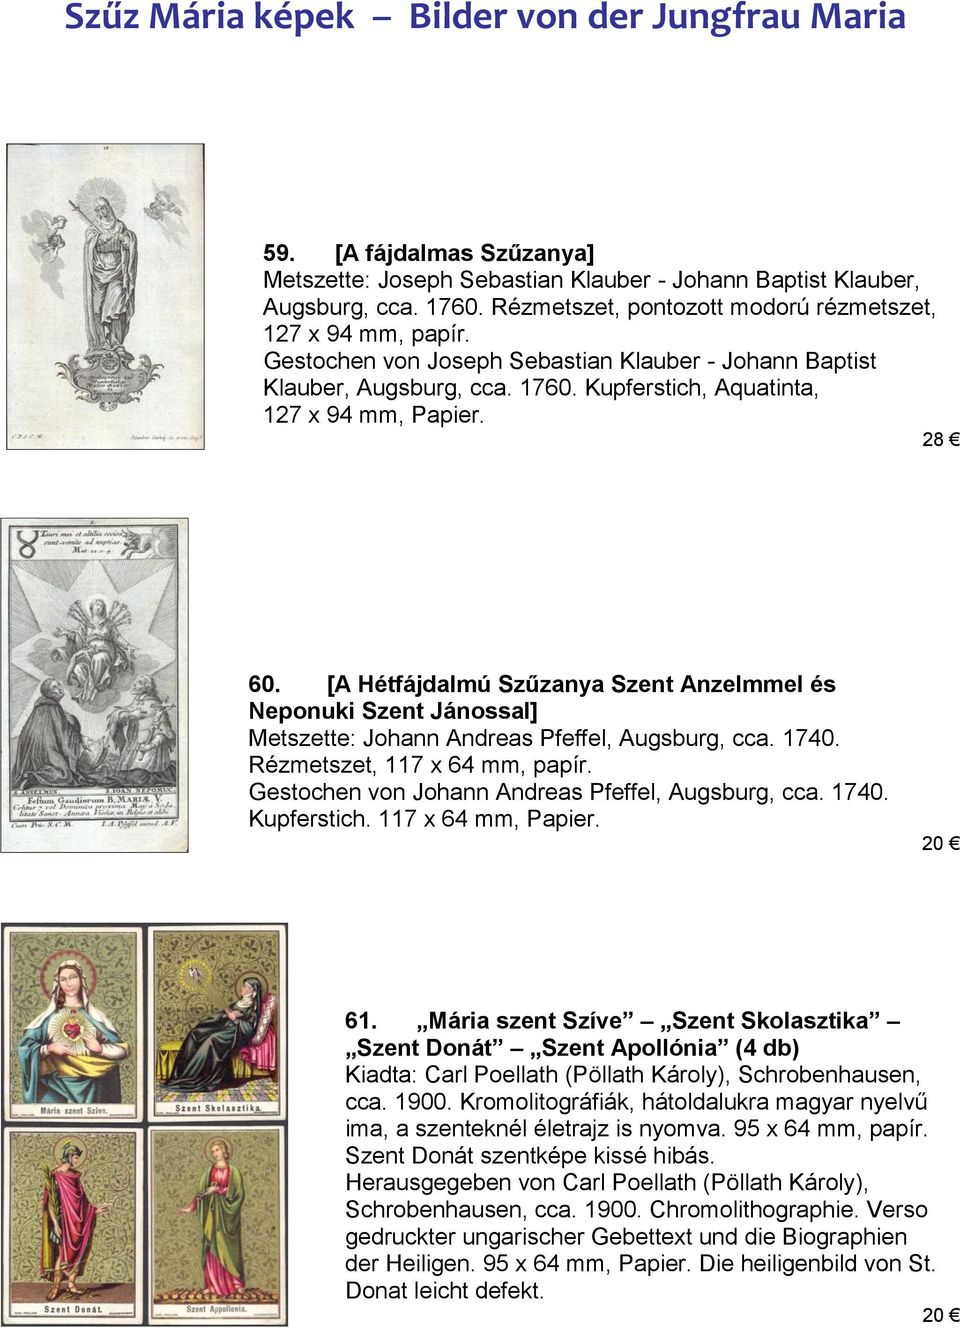 [A Hétfájdalmú Szűzanya Szent Anzelmmel és Neponuki Szent Jánossal] Metszette: Johann Andreas Pfeffel, Augsburg, cca. 1740. Rézmetszet, 117 x 64 mm, papír.